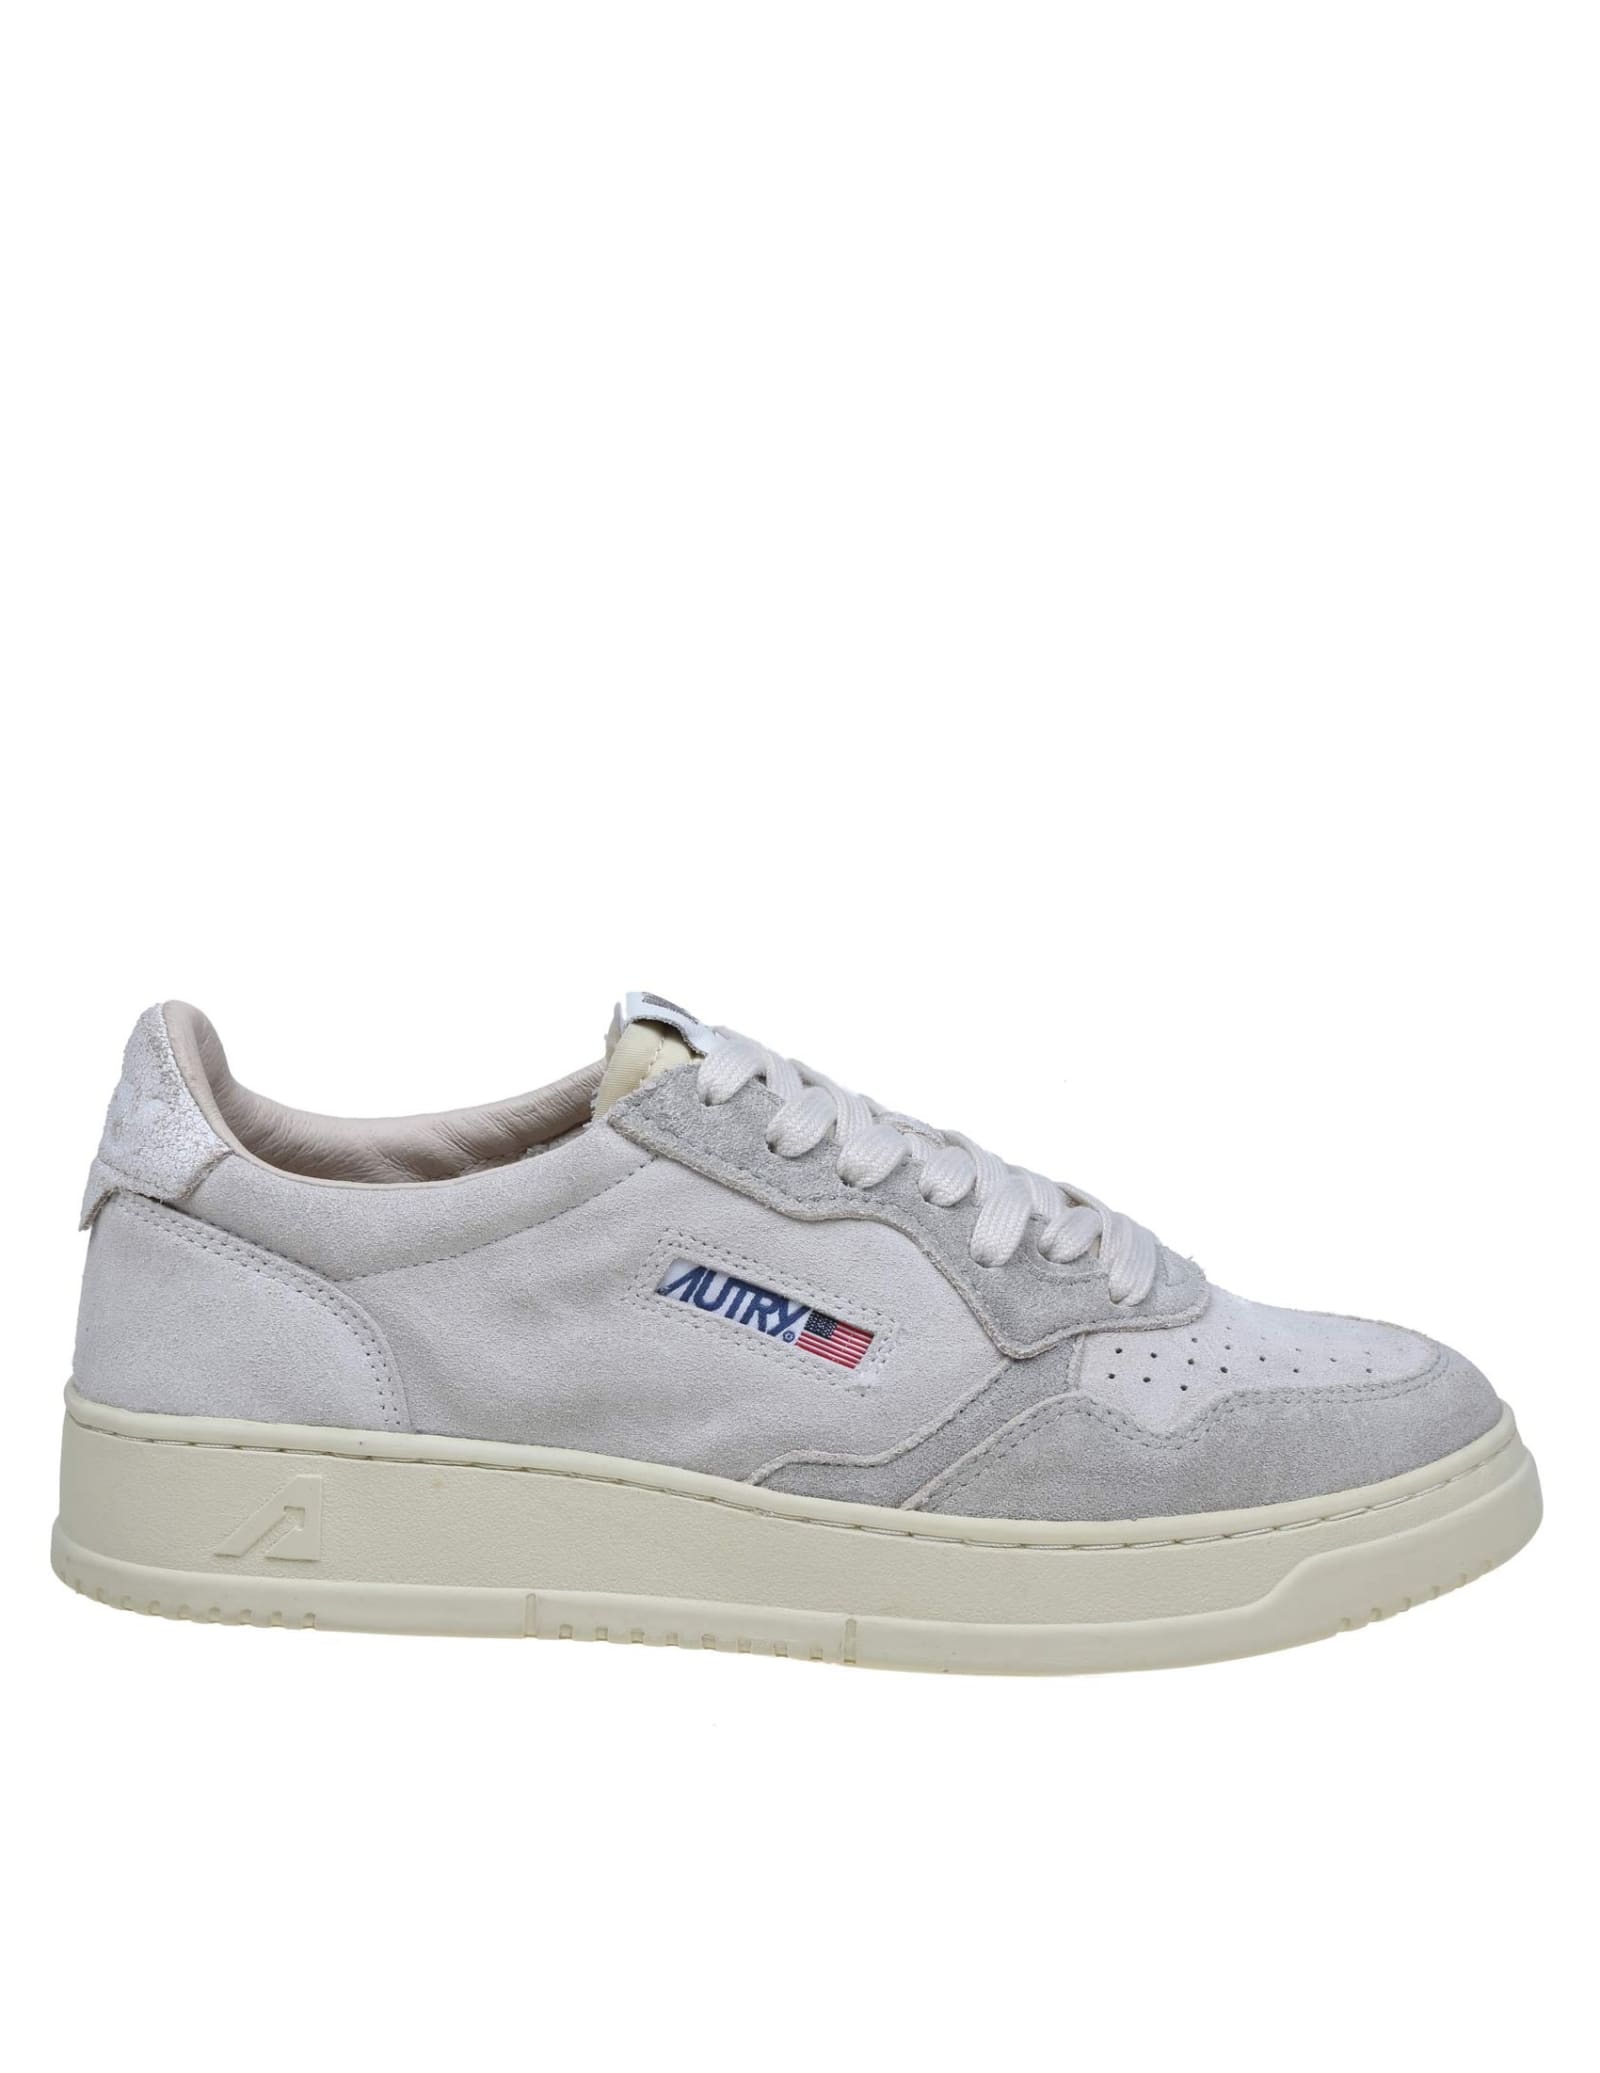 Shop Autry Cream/white Suede Sneakers In Cream White